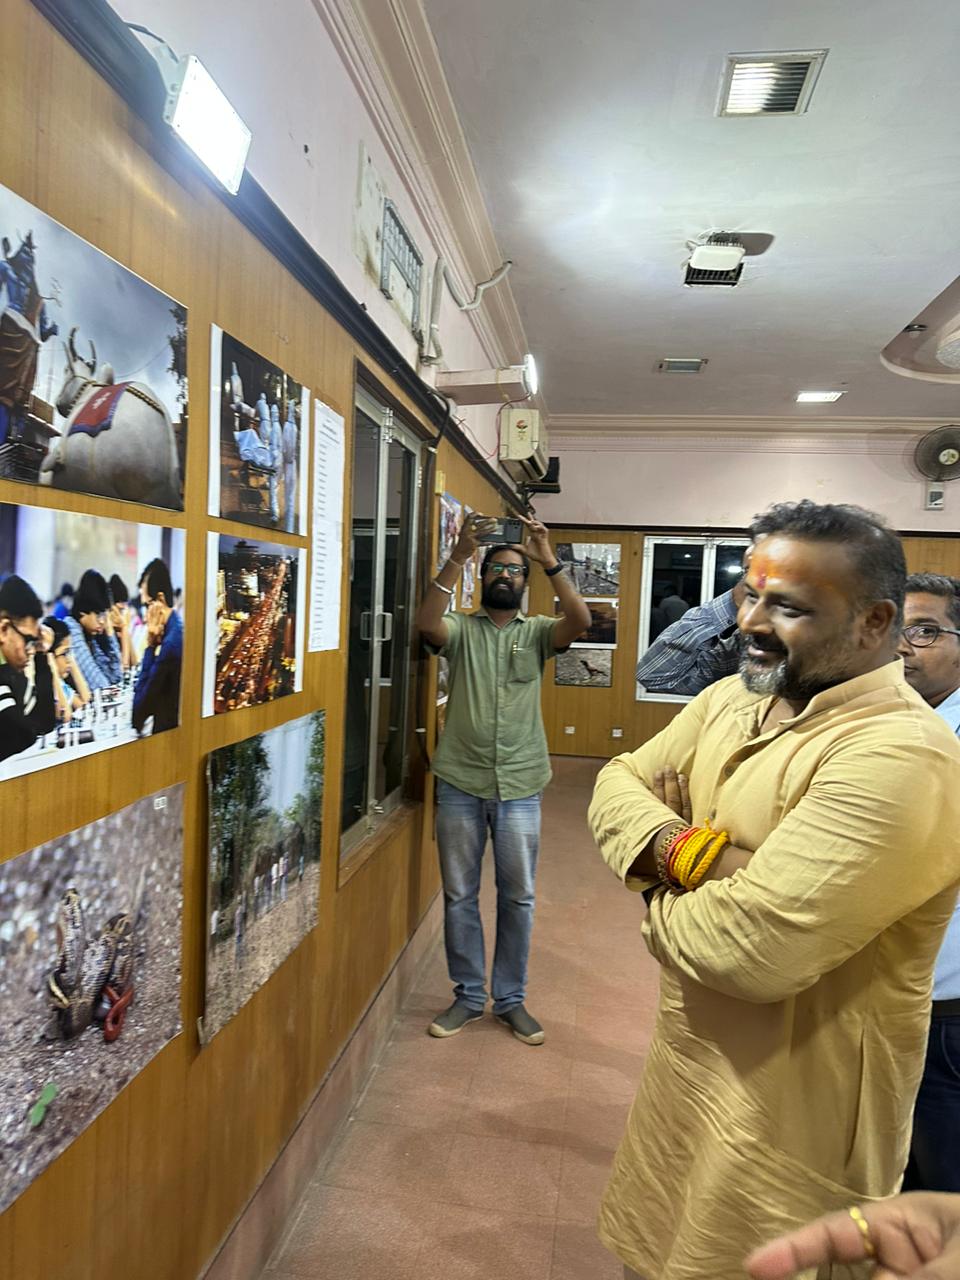 Photo exhibition by Photojournalist Association and Raipur Press Club on World Photography Day, Shram Karmakar Mandal President Sushil Sunny Aggarwal, Anil Pusadkar and senior photojournalists Gokul Soni, Javed Khan, Santosh Sahu, Deepak Pandey, Kishan Lokhande, Mahadev Tiwari, Ajay Sahu,  Raman Halwai, Trilochan Manikpuri, Heera Manikpuri, Jai Goswami, Bhupesh Kesharwani, Sudhir Sagar, Vimal Minj, Santosh Tiwari, Dipendra Soni, Chhattisgarh, Khabargali